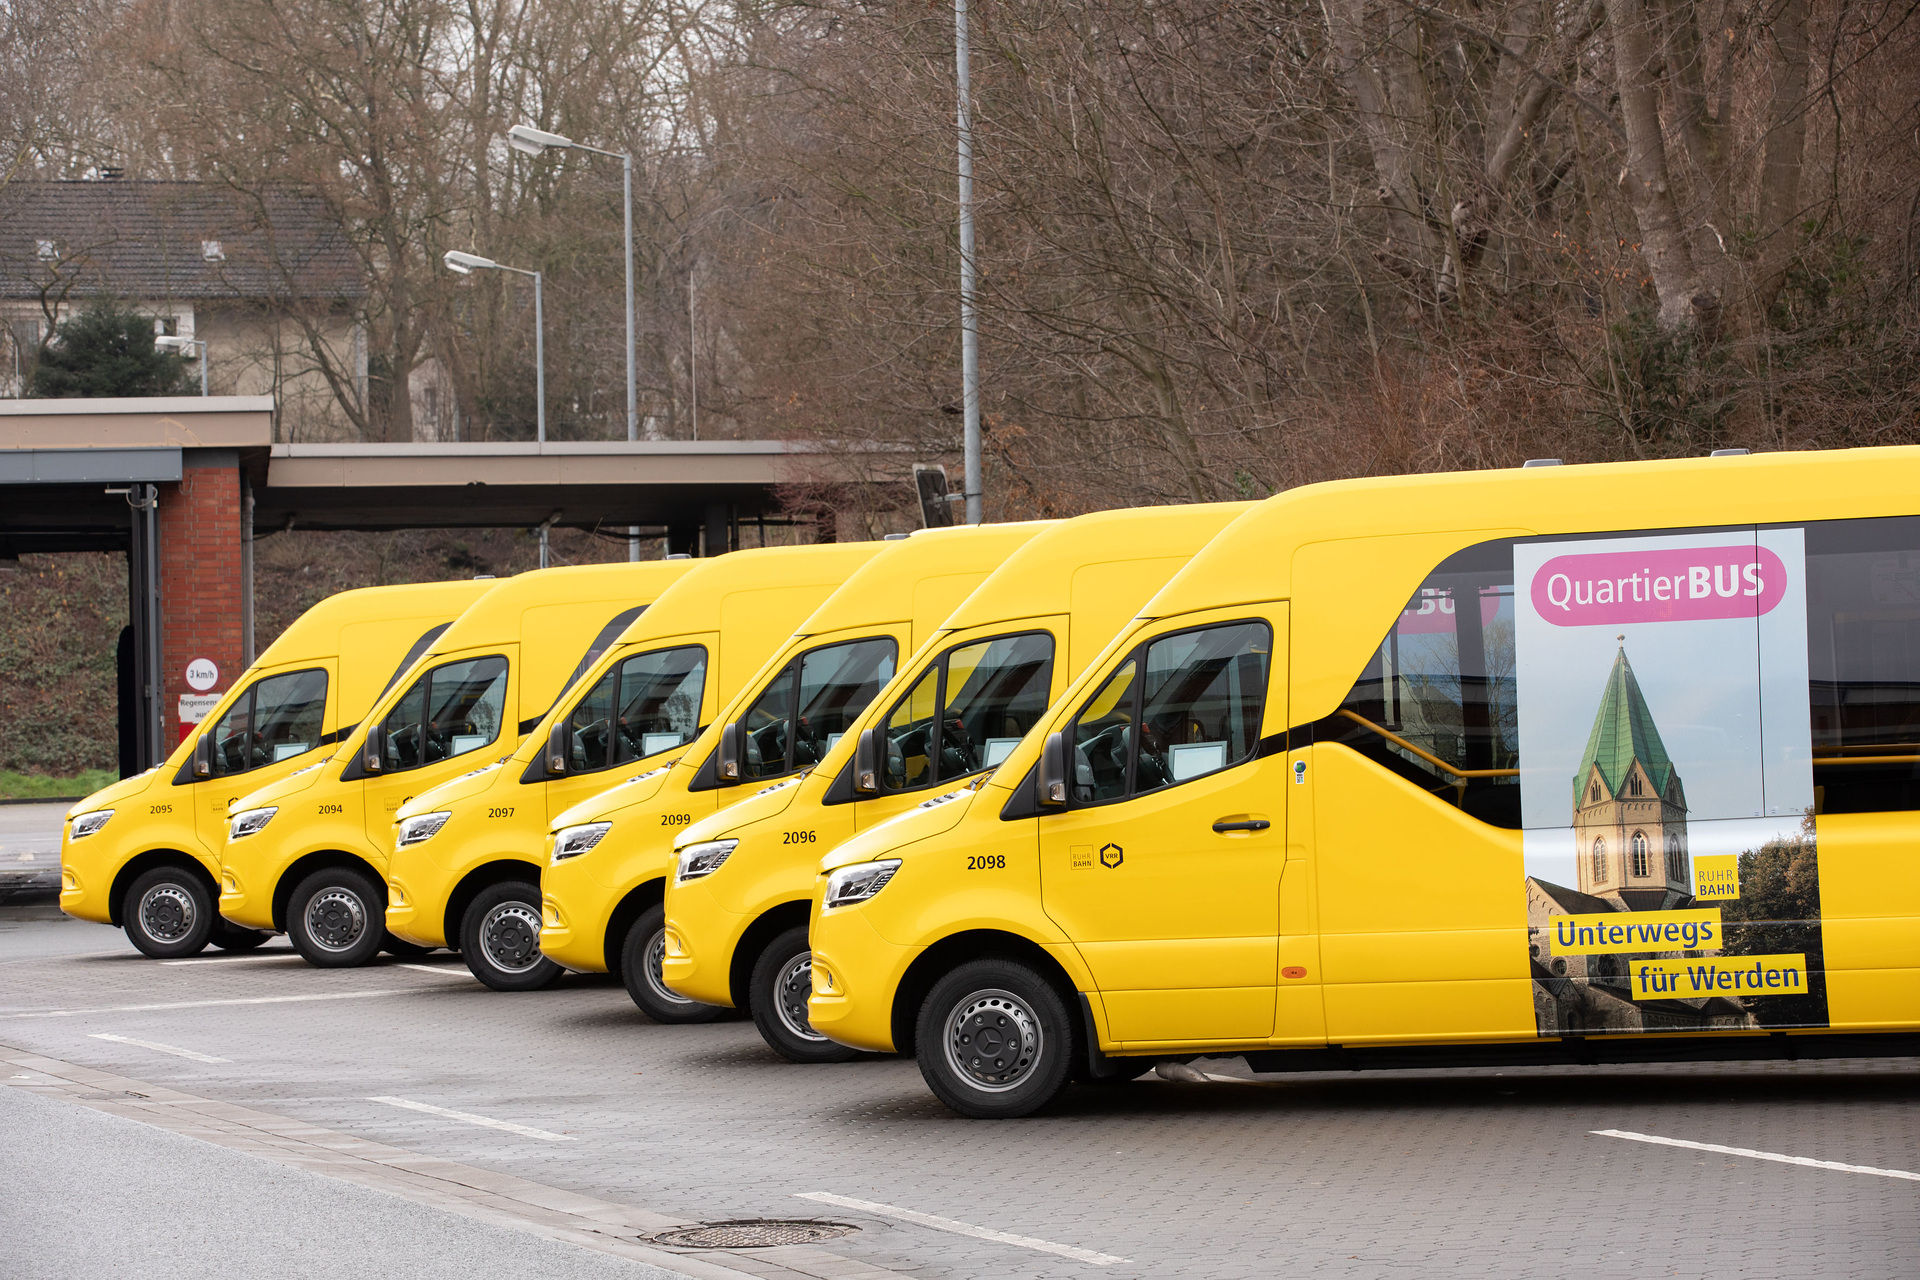 Minibusse mit Stern verbinden: Sechs neue Sprinter City 75 bedienen die neuen Quartierbuslinien der Ruhrbahn in Essen